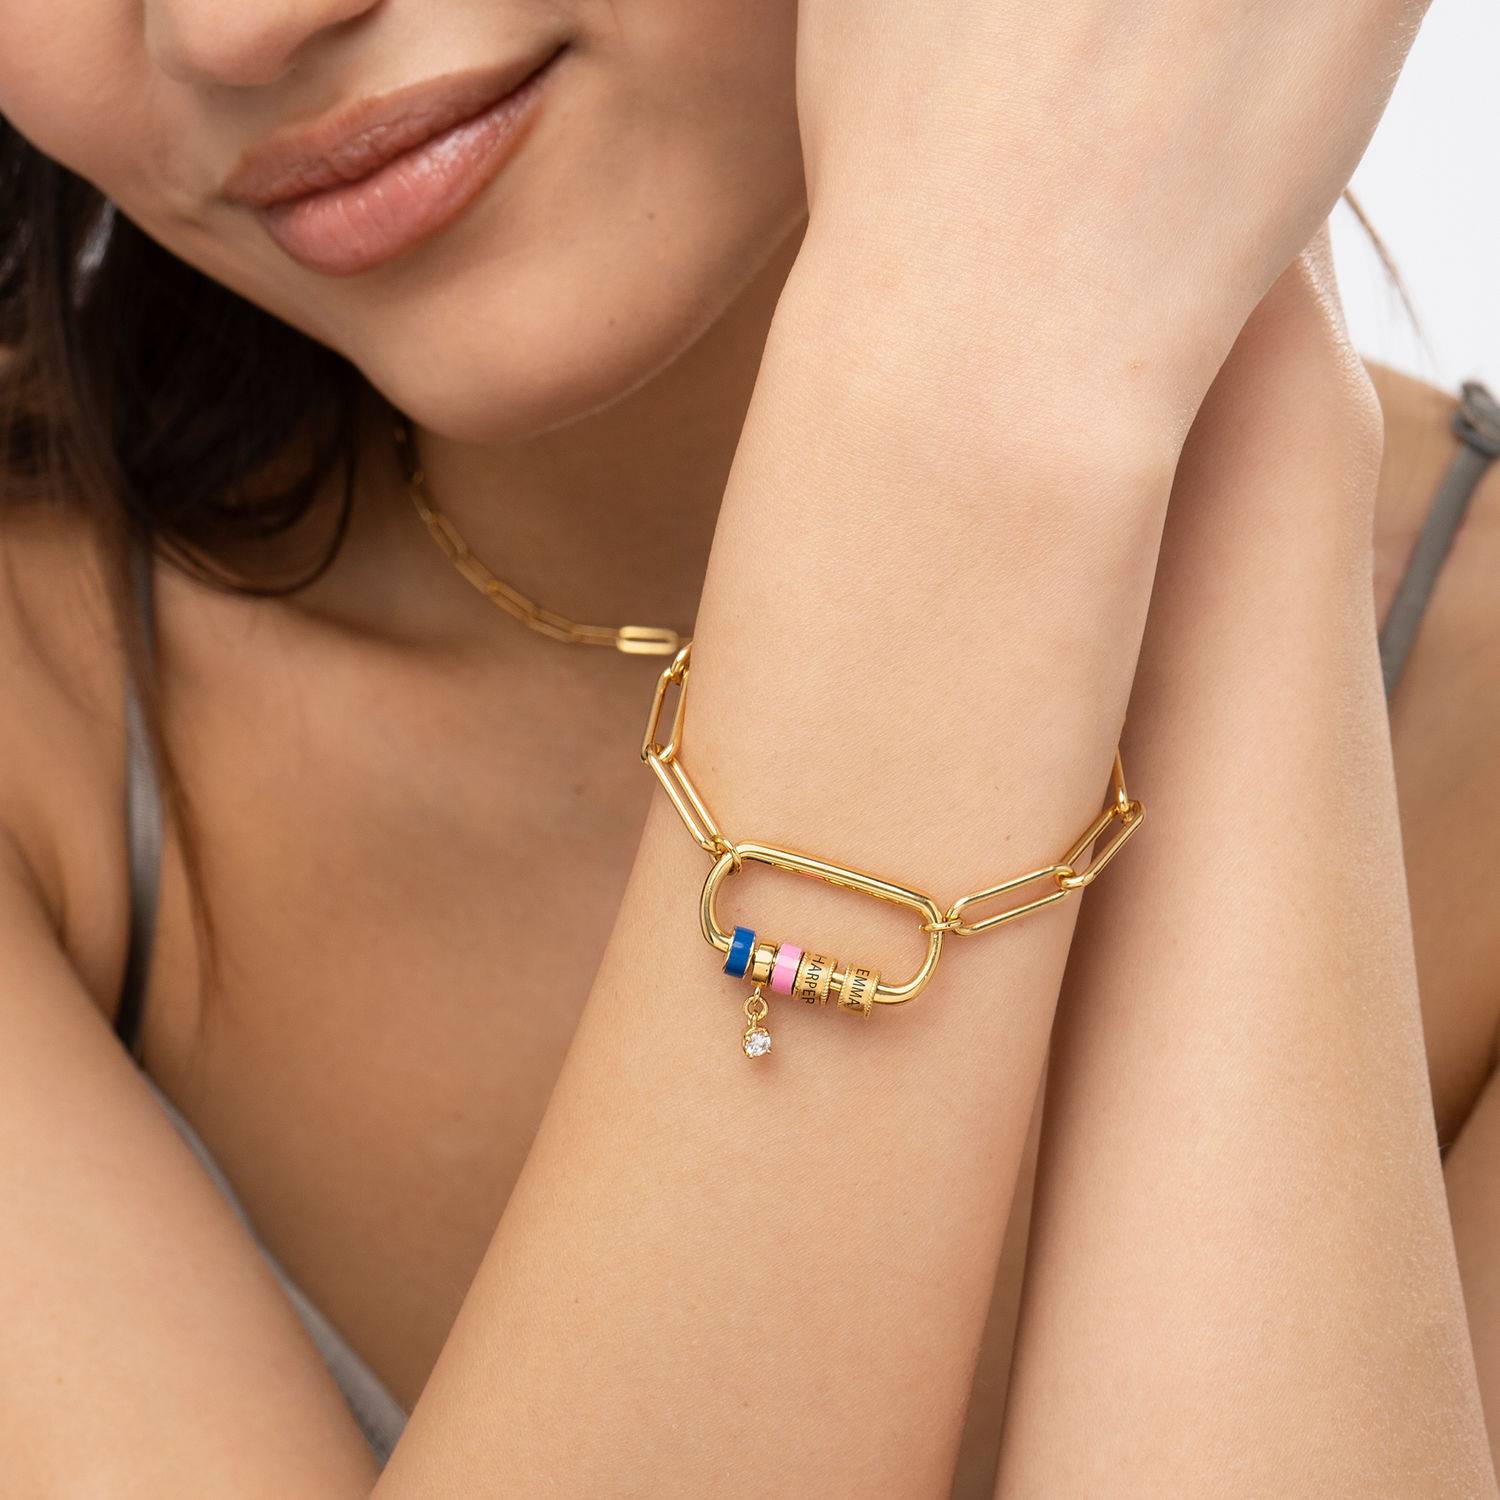 Linda armband met ovale sluiting en 0,25 ct diamant in 18k goud vermeil-4 Productfoto